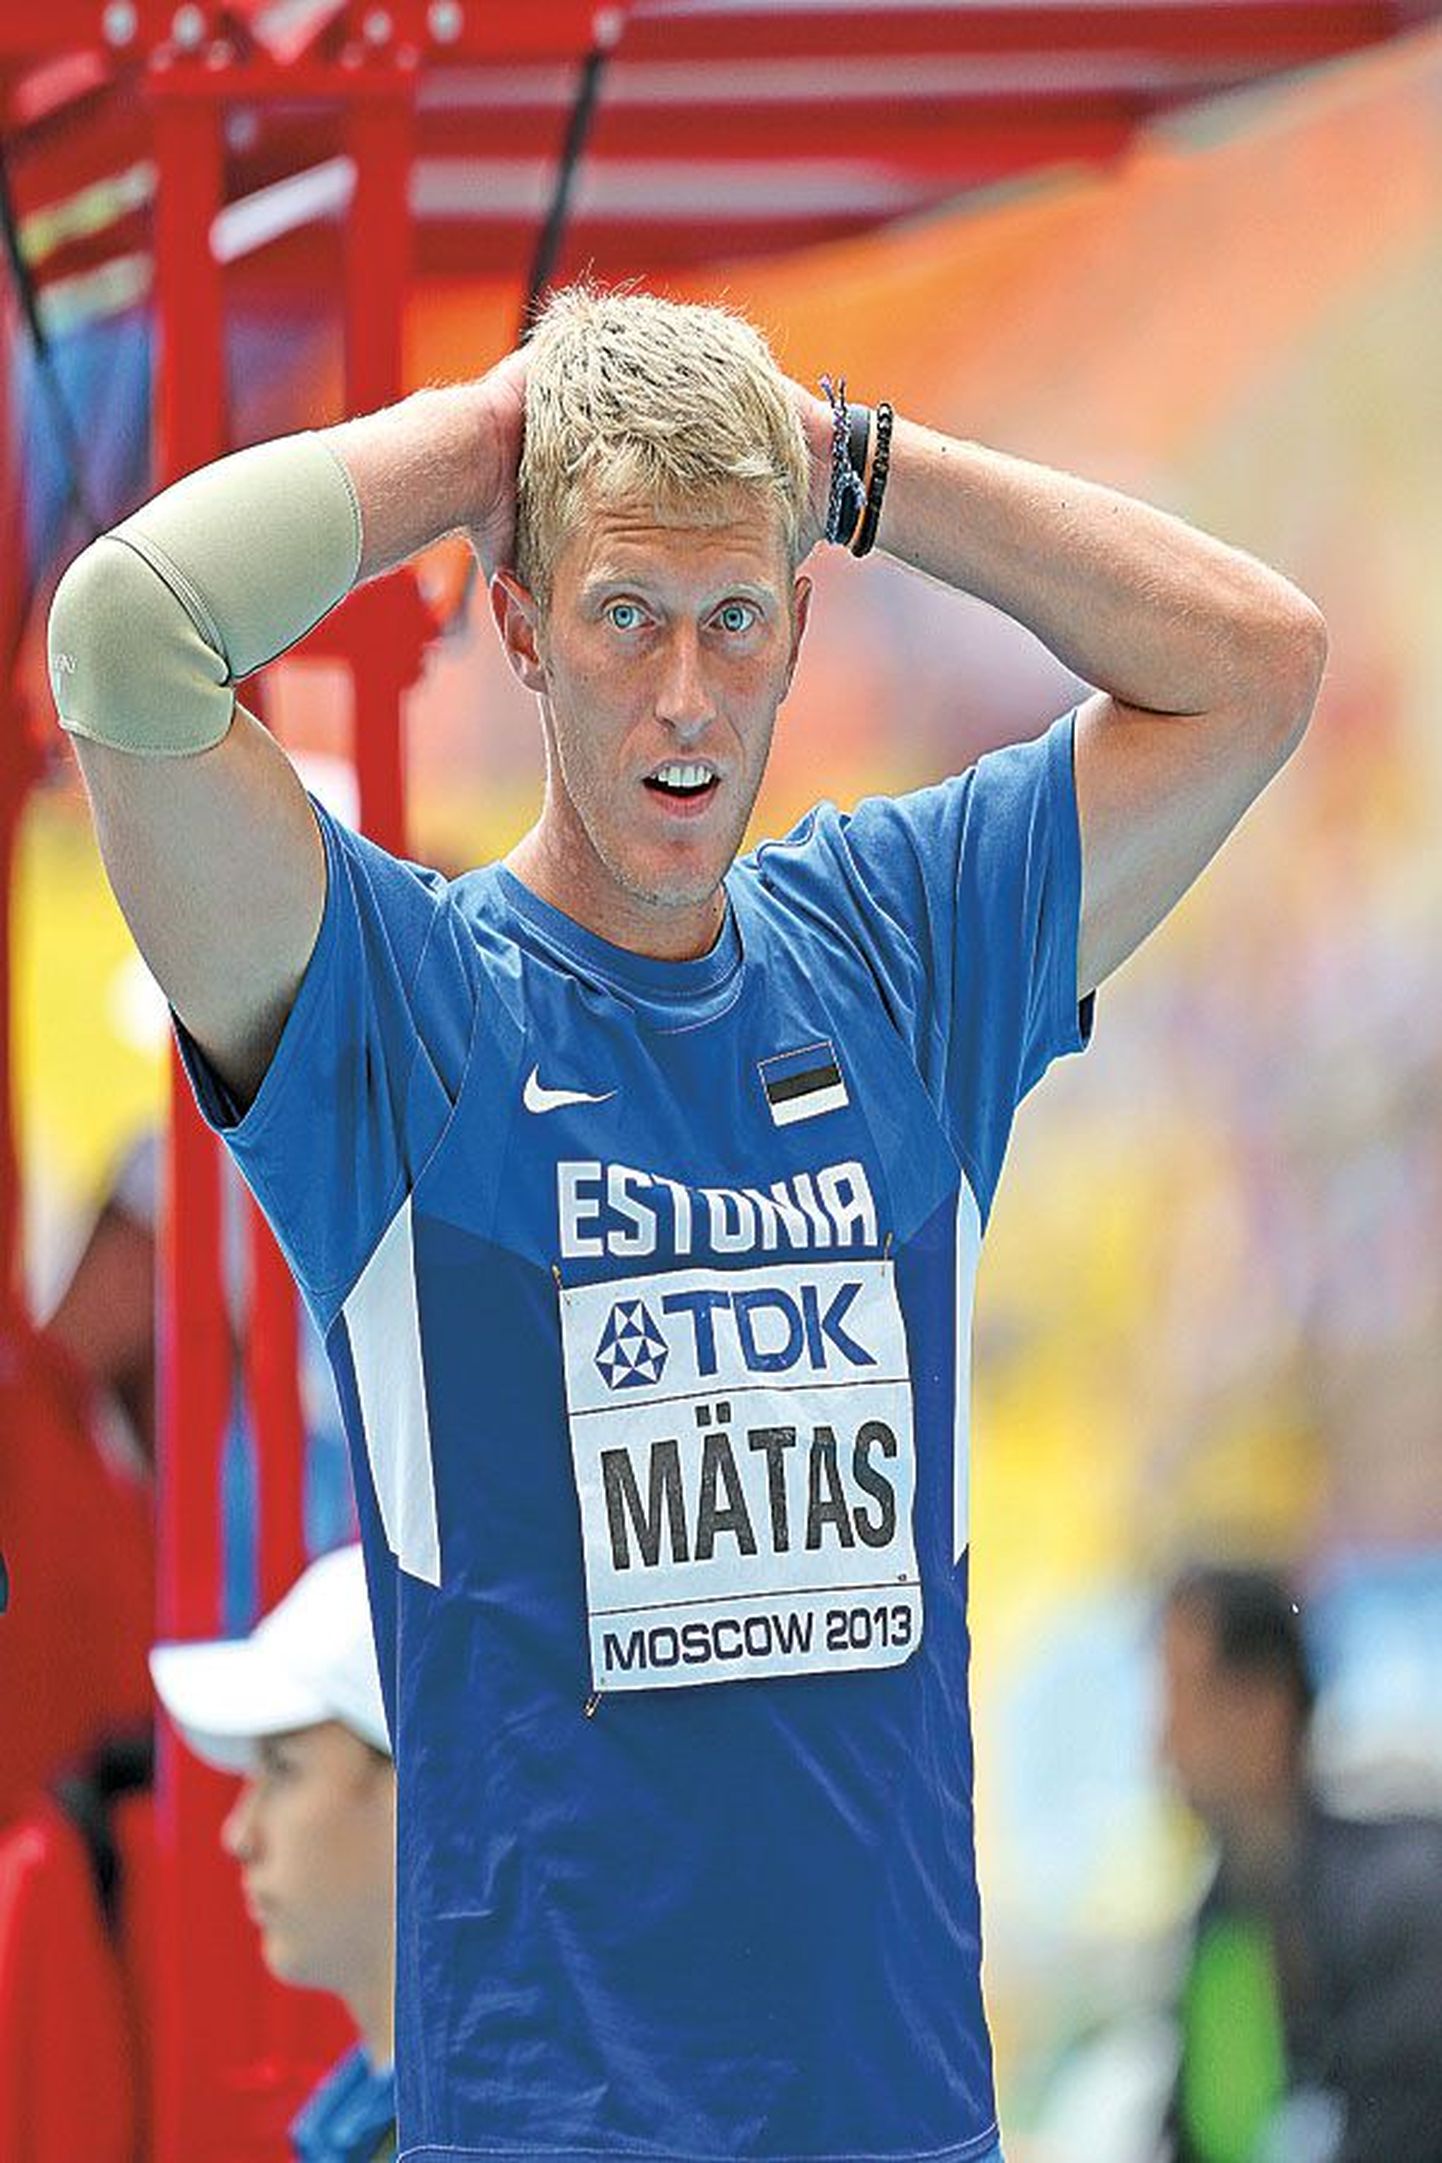 Pärast viimast katset arvas Risto Mätas, et tulemus jäi lõppvõistlusele pääsemiseks lahjaks. Lõpuks selgus, et mees eksis.